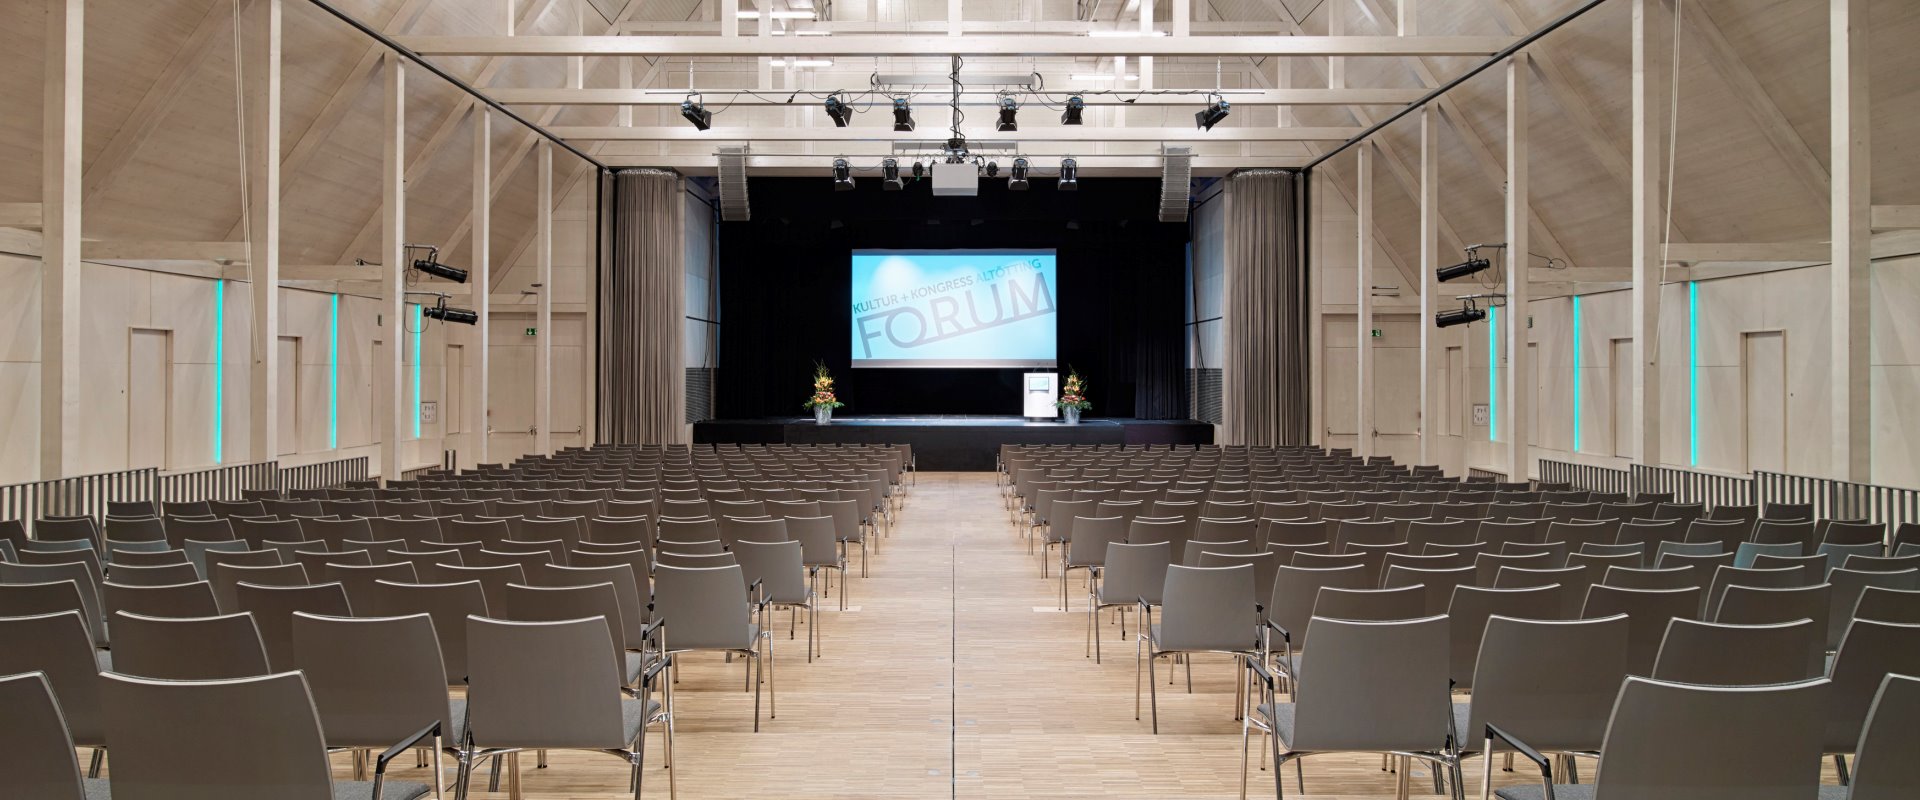 Der Raiffeisen-Saal mit Reihenbestuhlung, Leinwand und Rednerpult auf der Bühne im Forum Altötting.